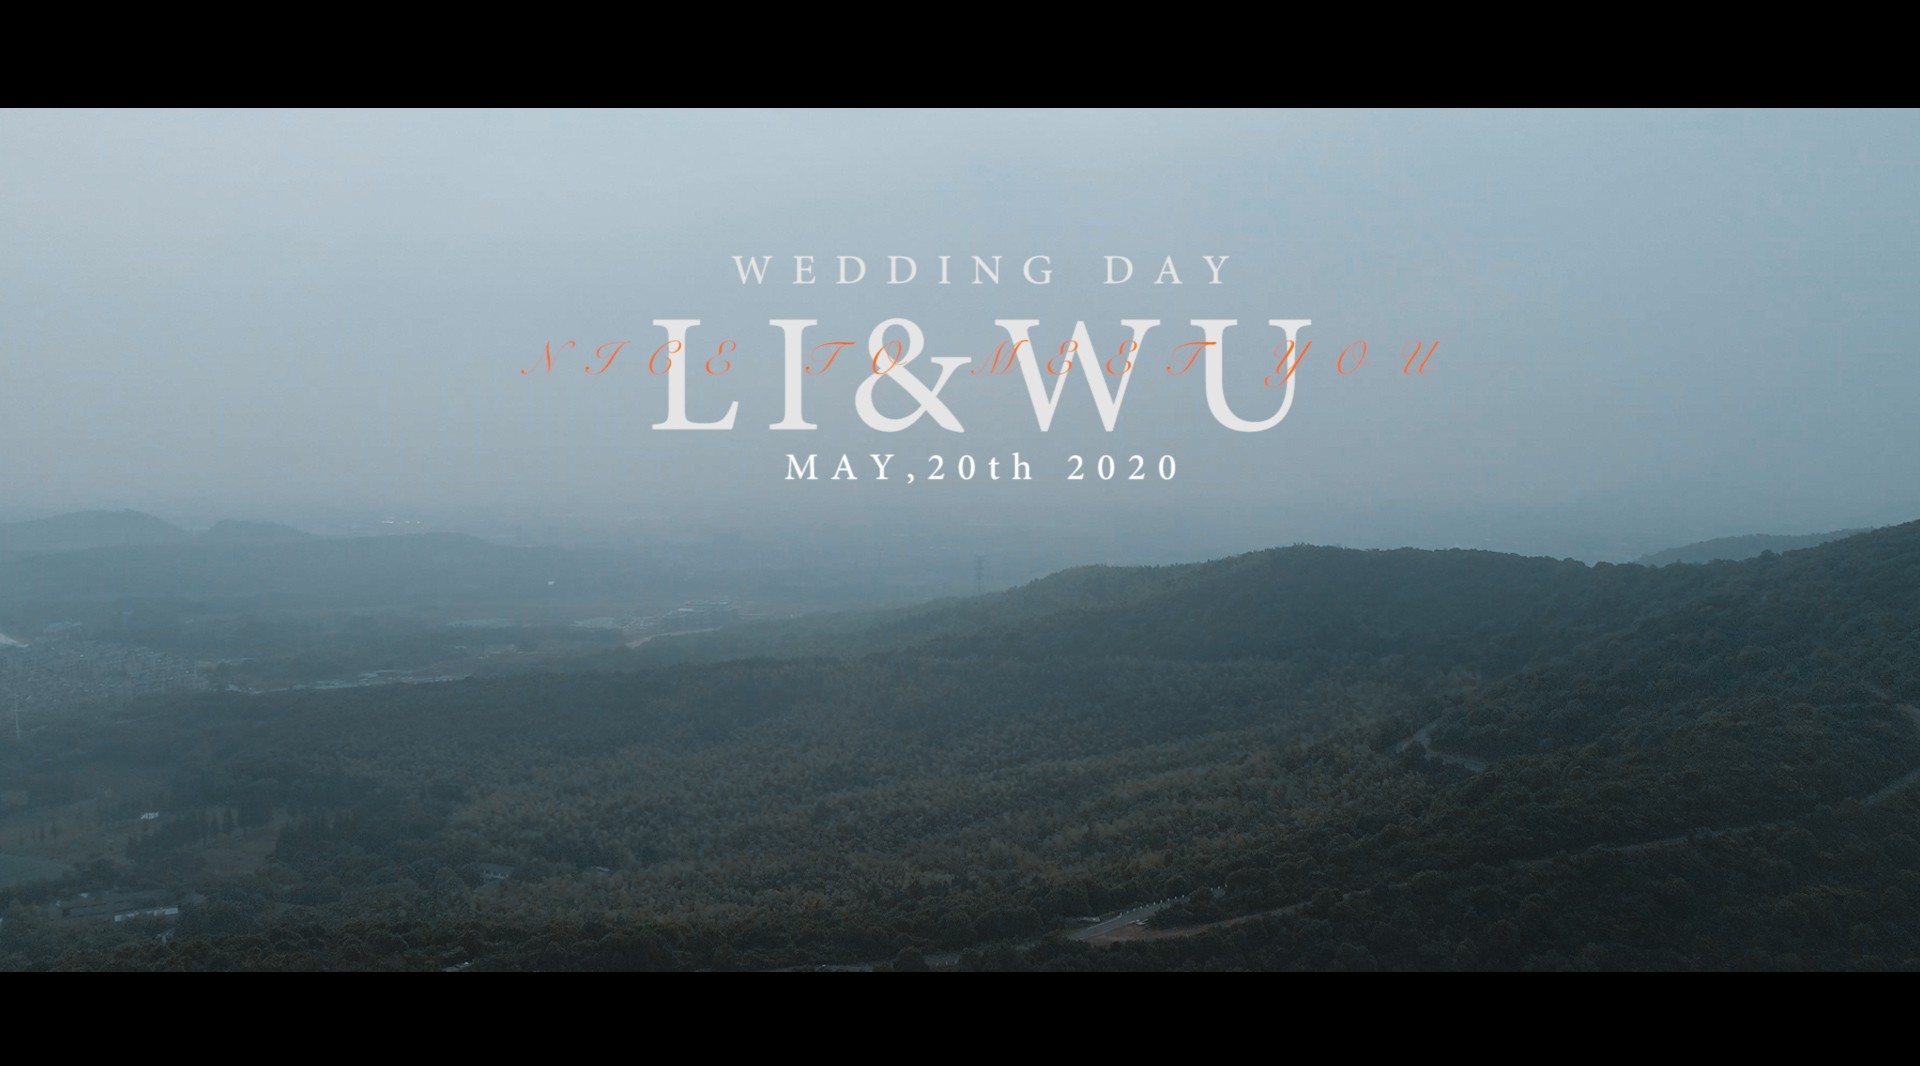 「LI&WU」2020.05.27喜来登婚礼快剪 